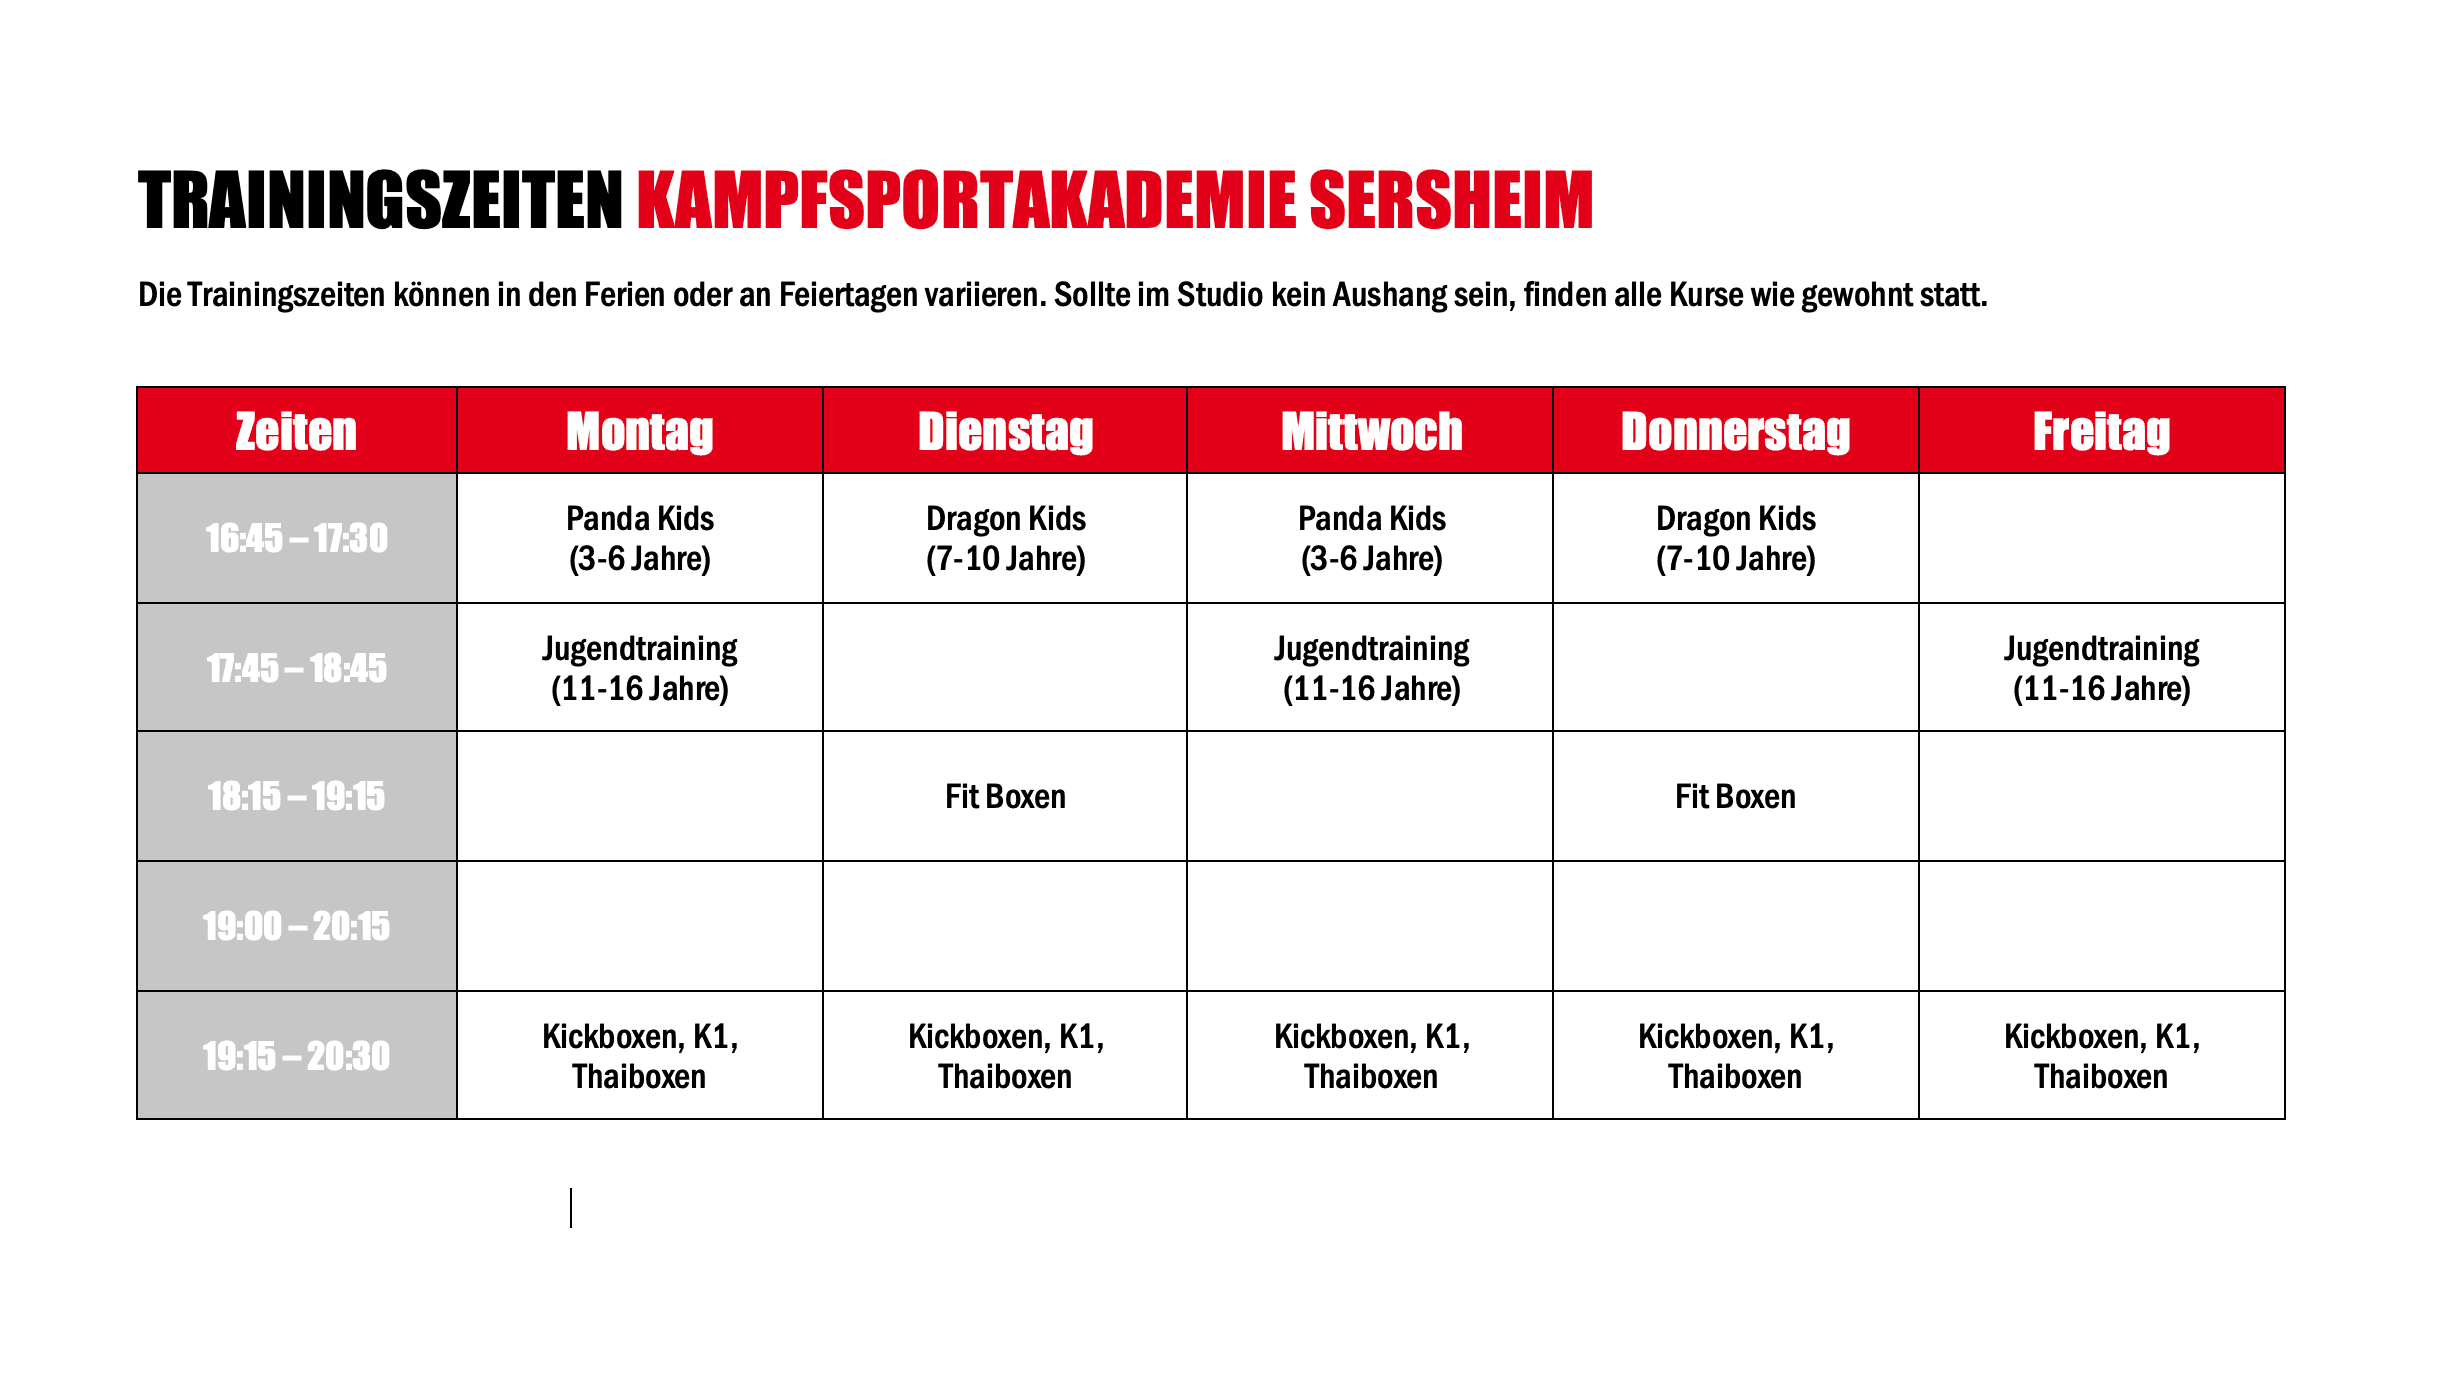 Trainingszeiten Sersheim